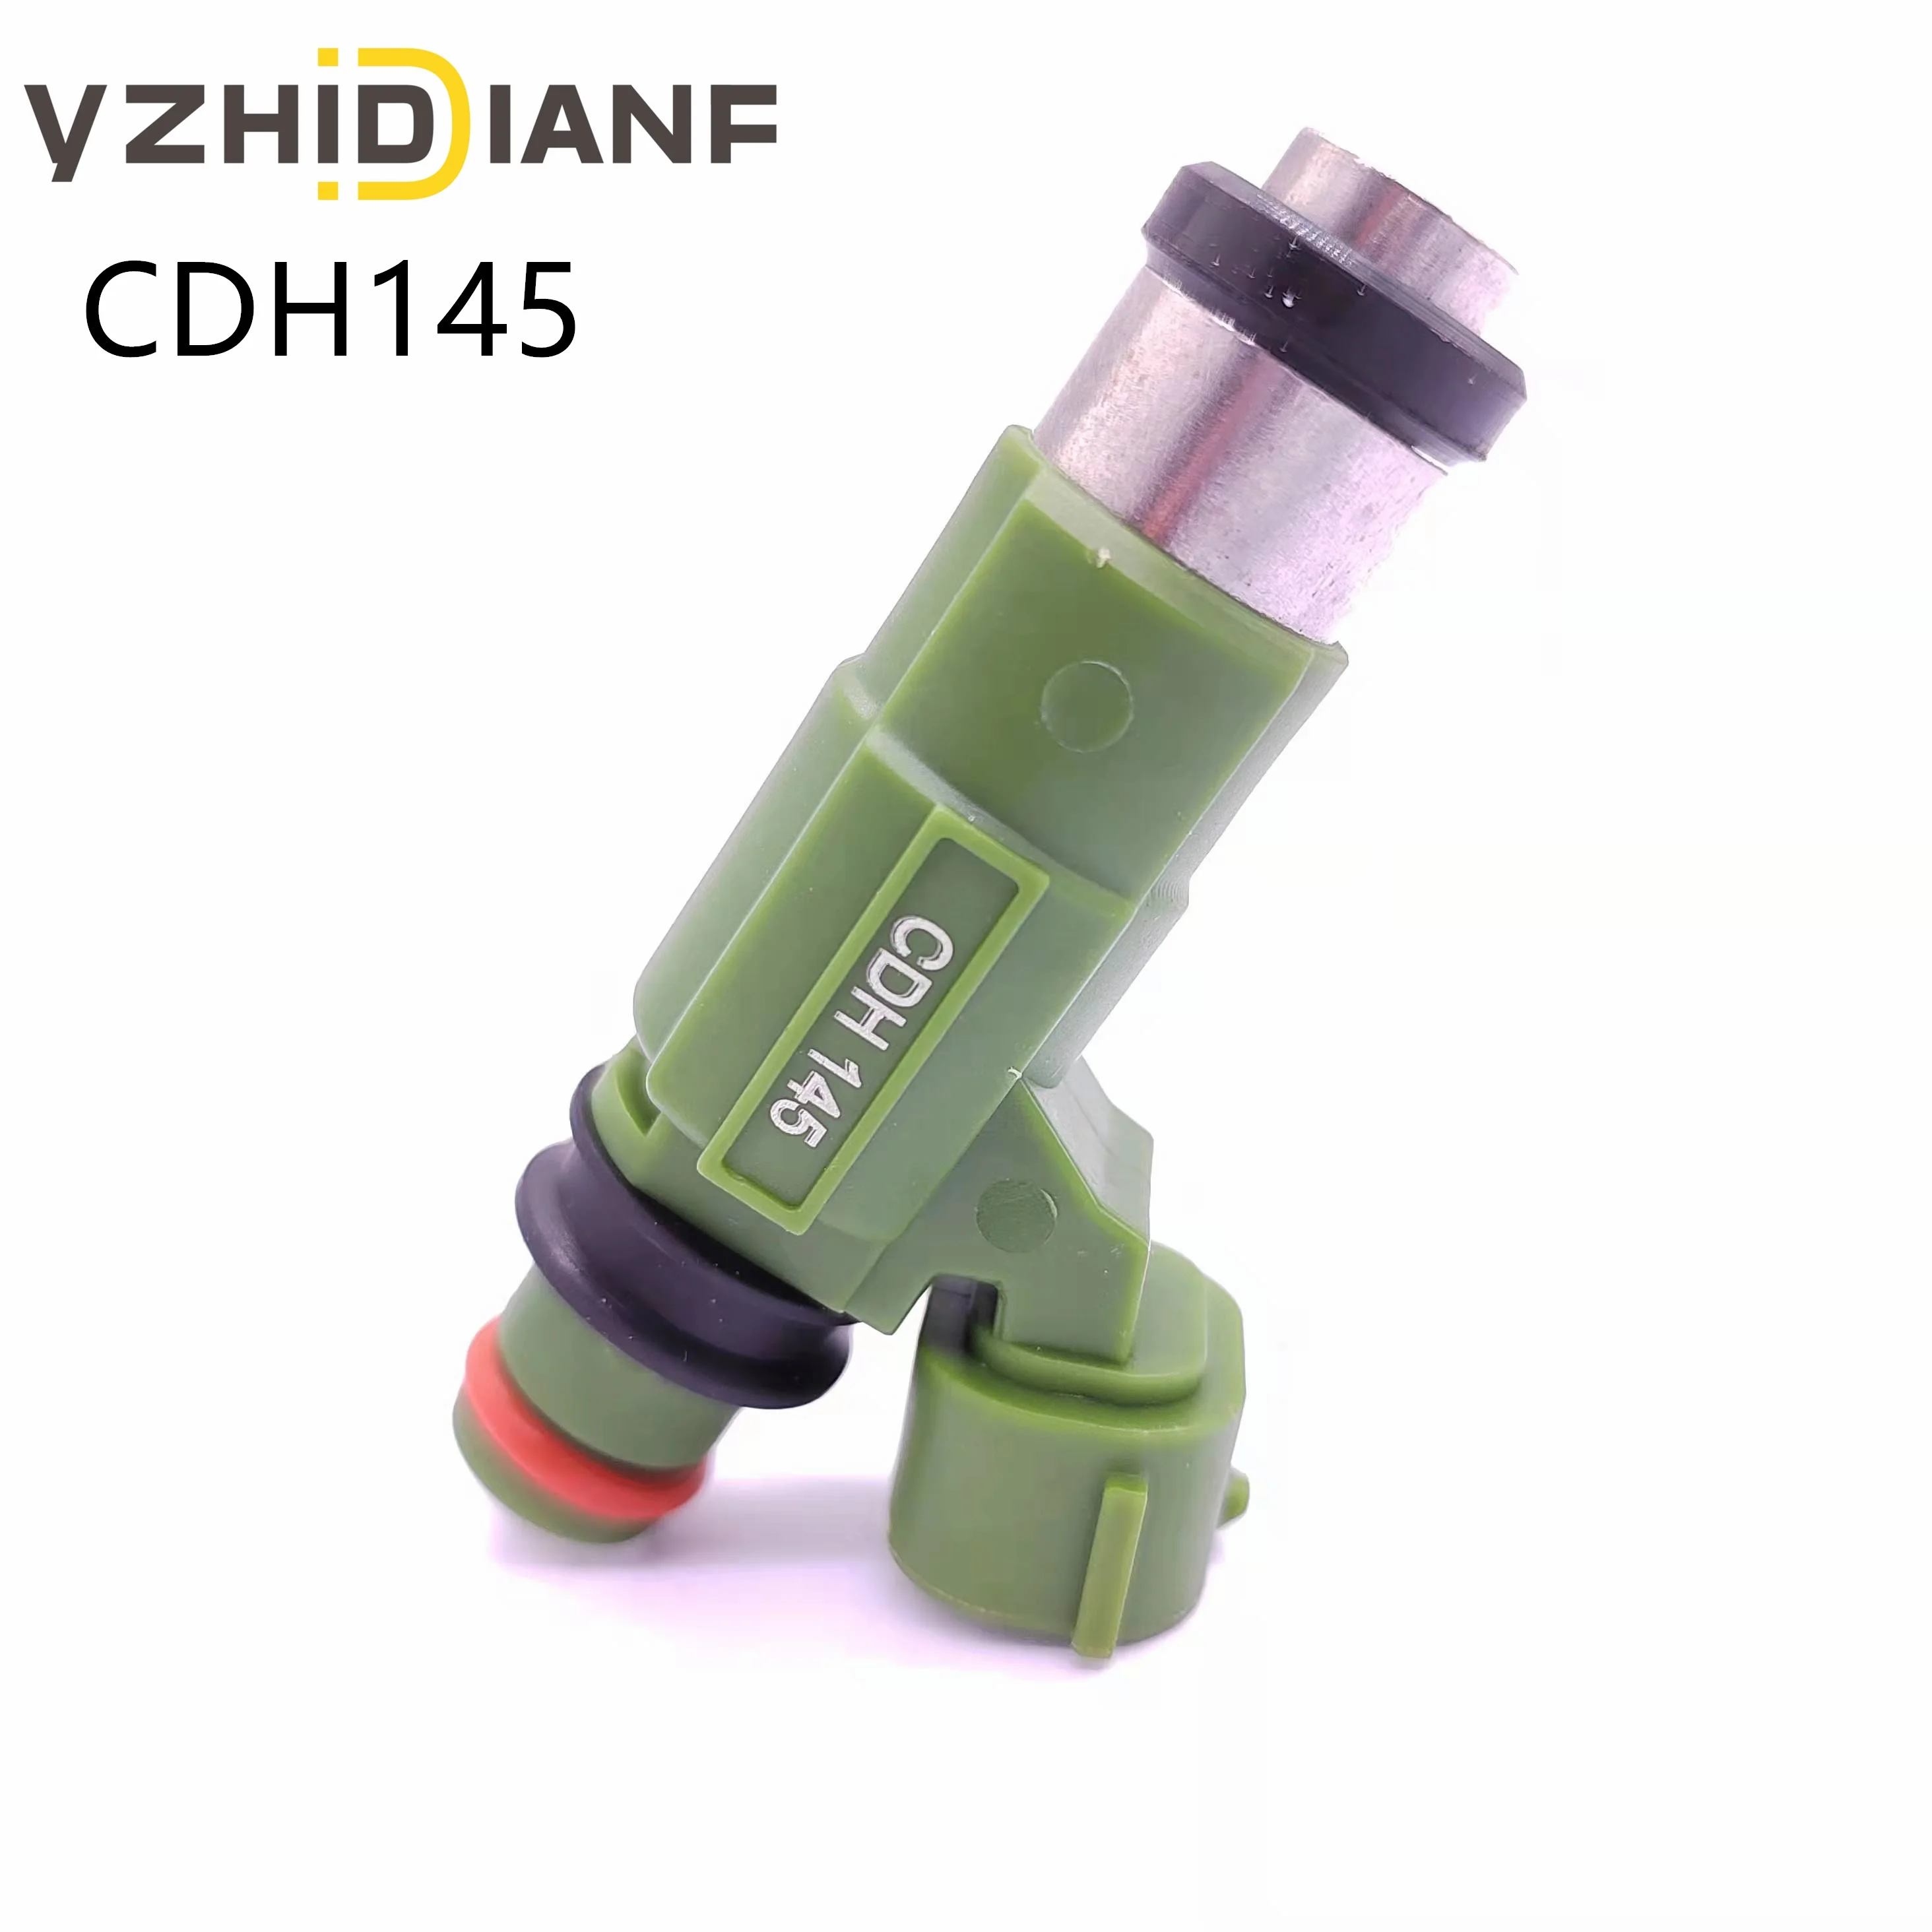 

1x Car Fuel Injector Nozzle CDH145 For Mitsubishi- Outlander- V73 4G69 2.4L Grandis- Car Accessories